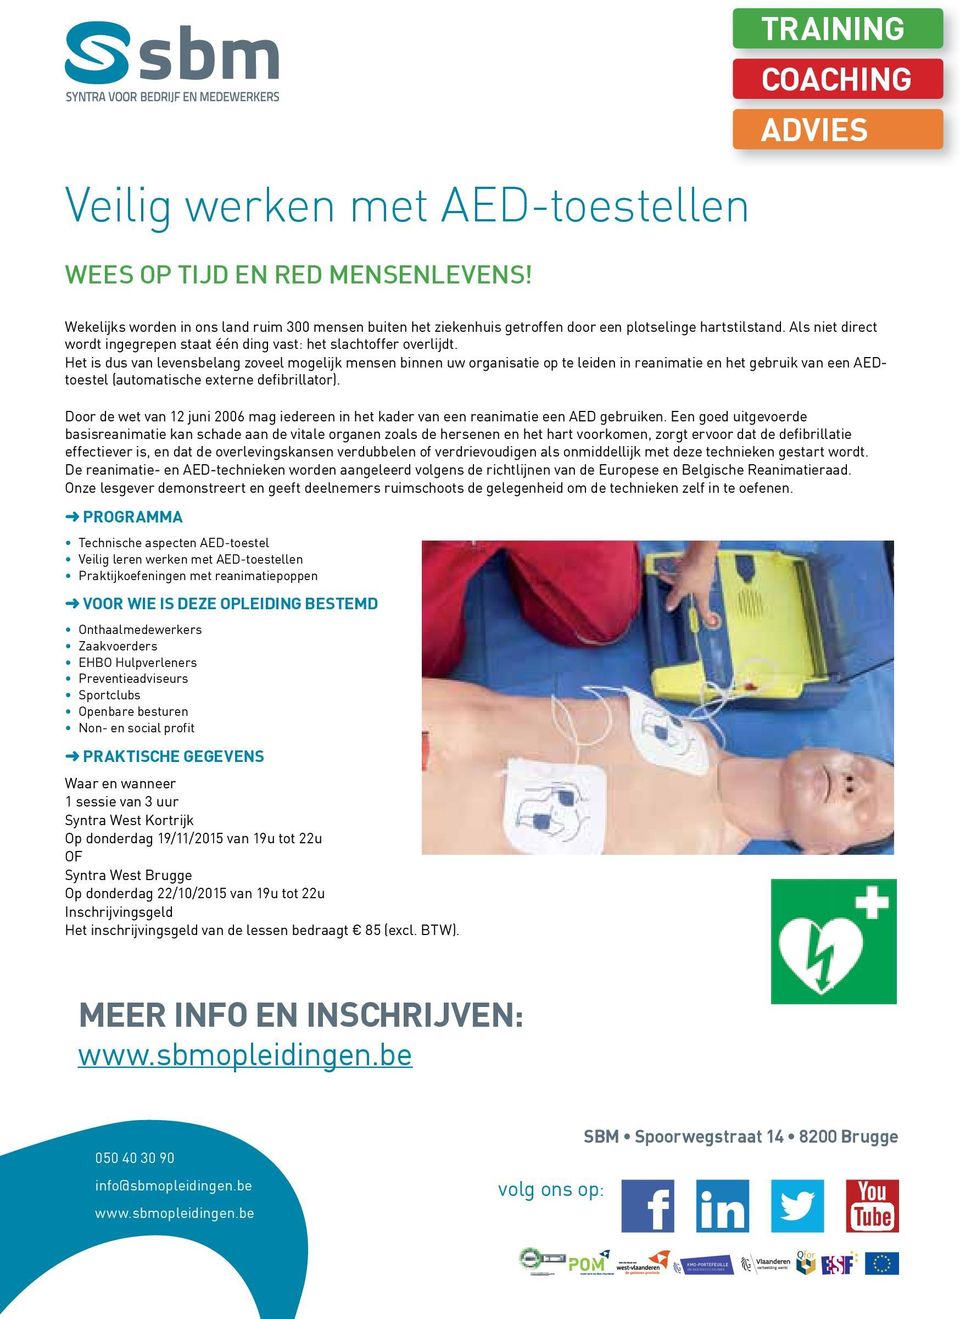 Het is dus van levensbelang zoveel mogelijk mensen binnen uw organisatie op te leiden in reanimatie en het gebruik van een AEDtoestel (automatische externe defibrillator).